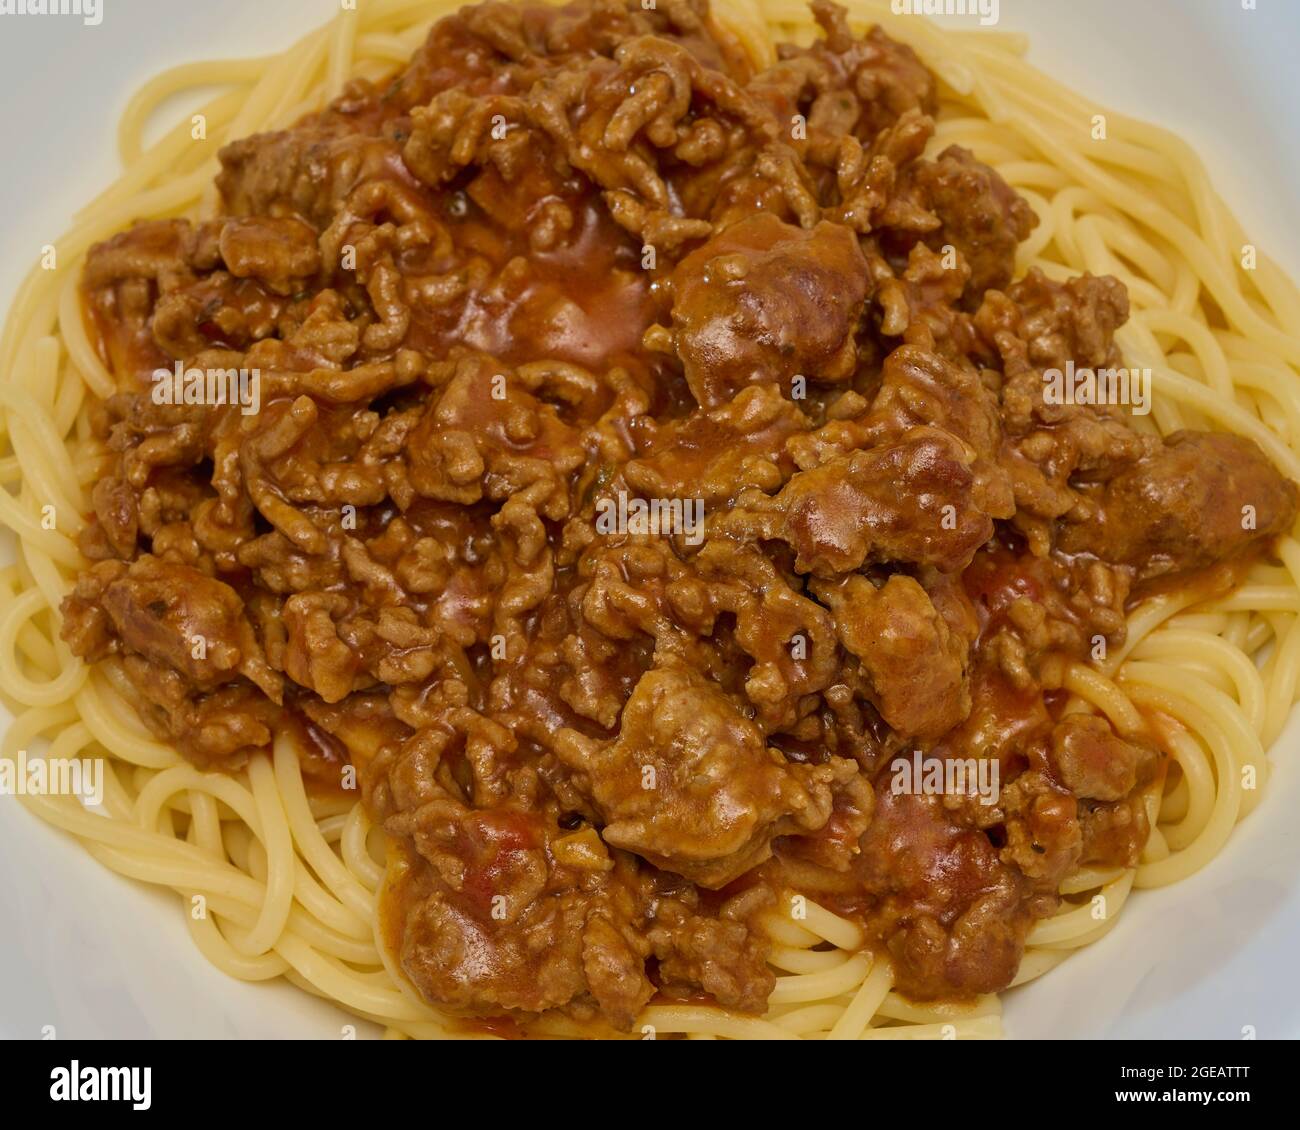 Food, Deutschland, Spaghetti Bolognese in einer weißen Schüssel, von Oben fotografiert. Stock Photo